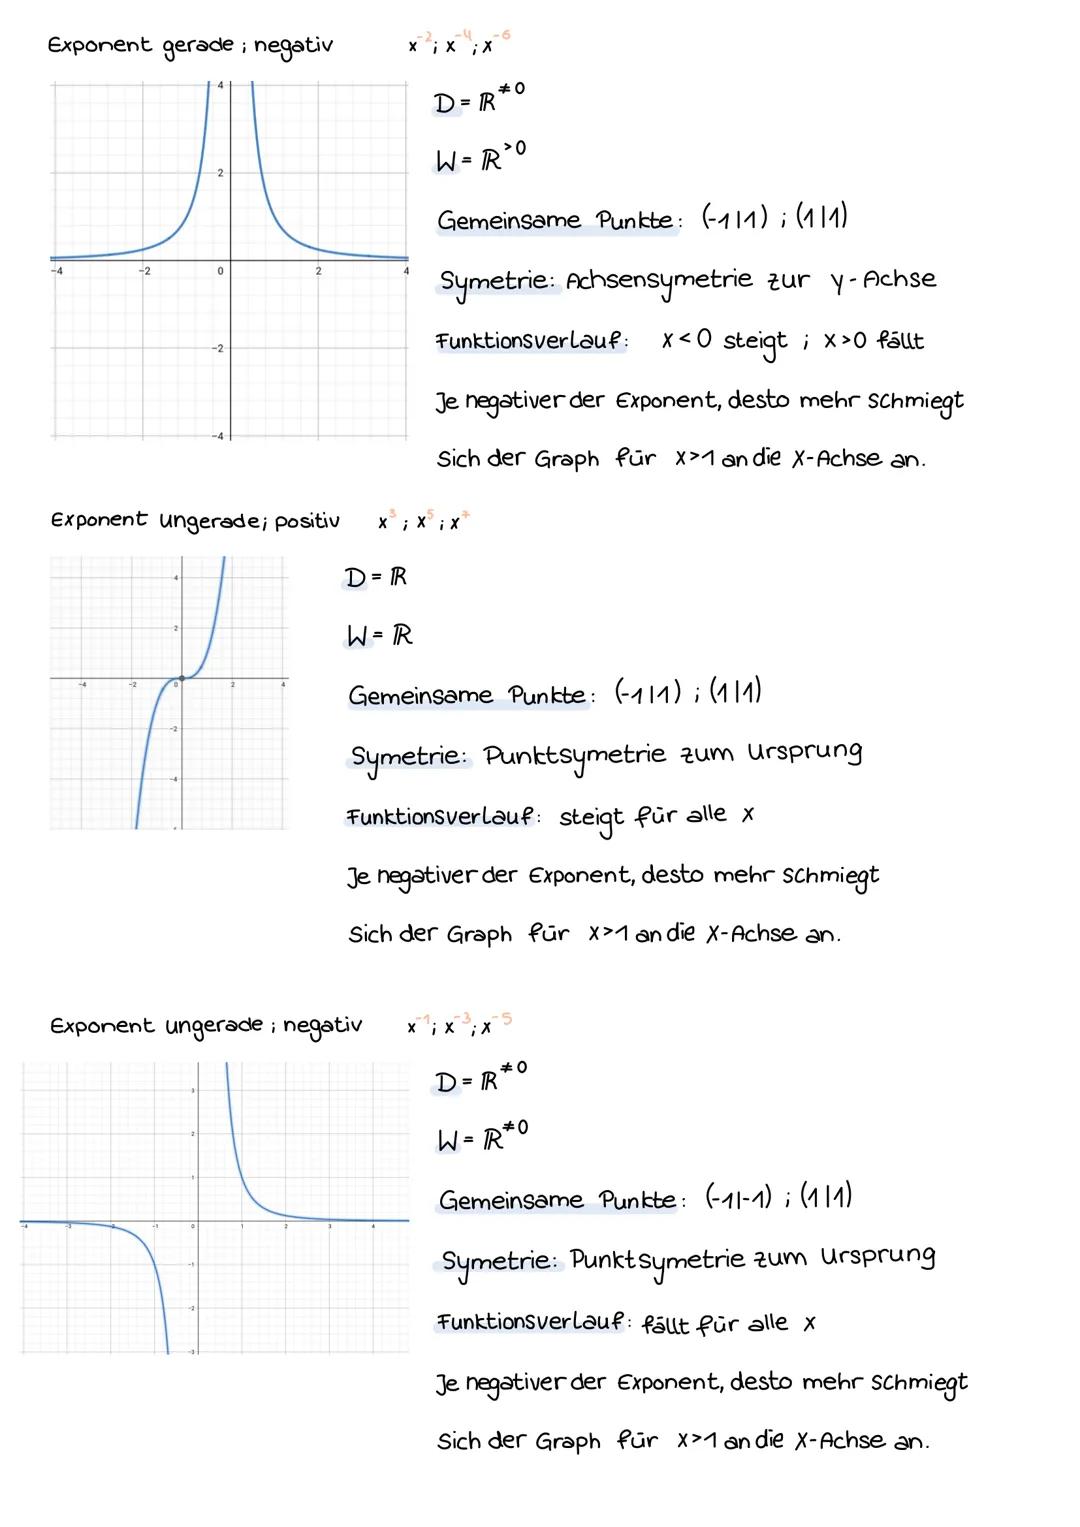 1.
2
3.
4.
2
Potenzfunktionan Uchbersicht
Graph skizzieren + zuordnen + beschreiben
2(x-1)³+1)
Beispiel: f(x) =
Graph spiegeln
Streckung auf